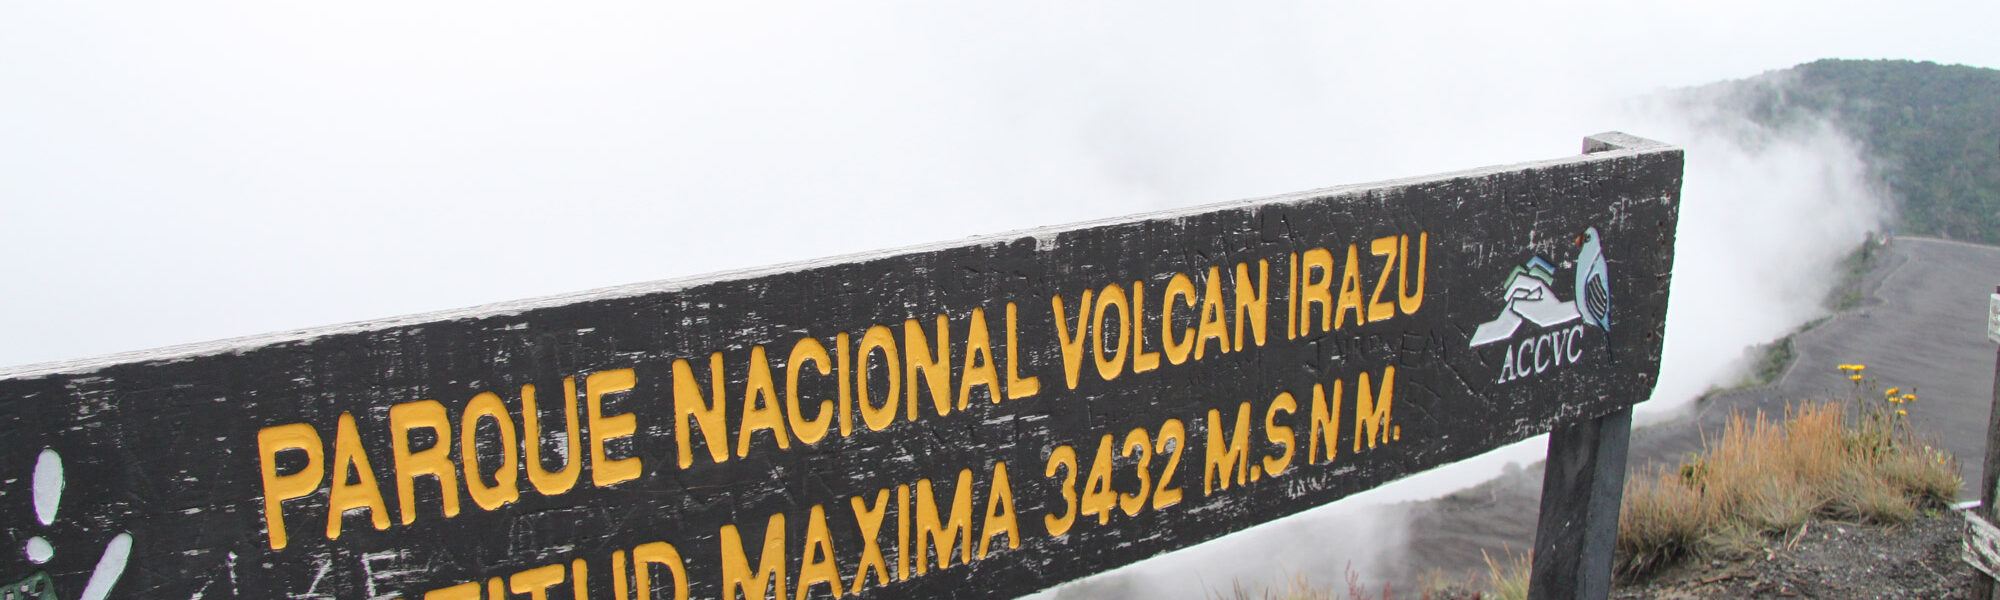 Volcán Irazú - Parque Nacional Volcán Irazú - Costa Rica